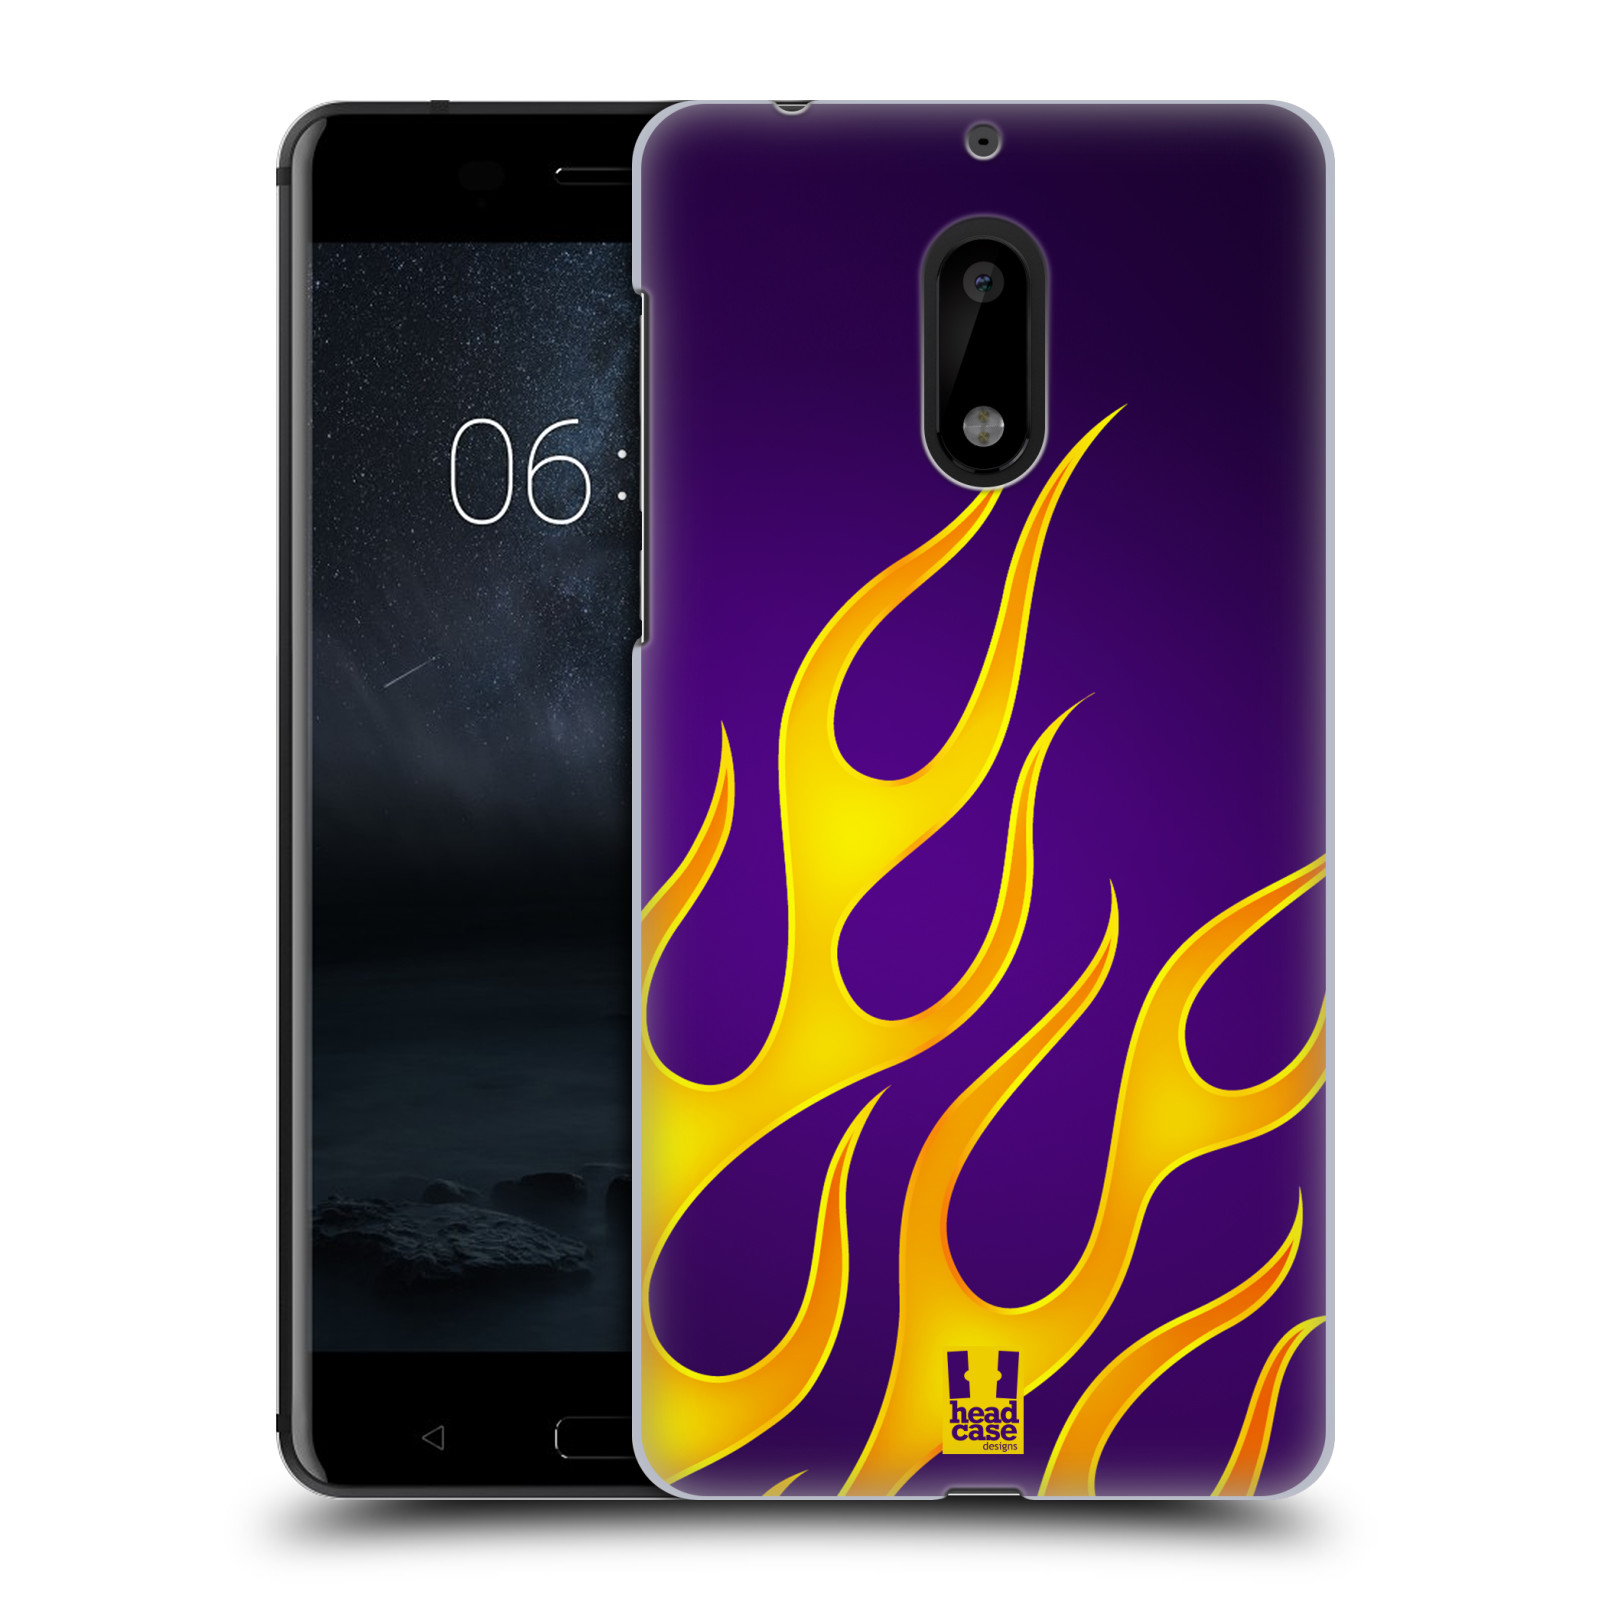 HEAD CASE plastový obal na mobil Nokia 6 vzor Motorismus ohnivé plameny FIALOVÁ